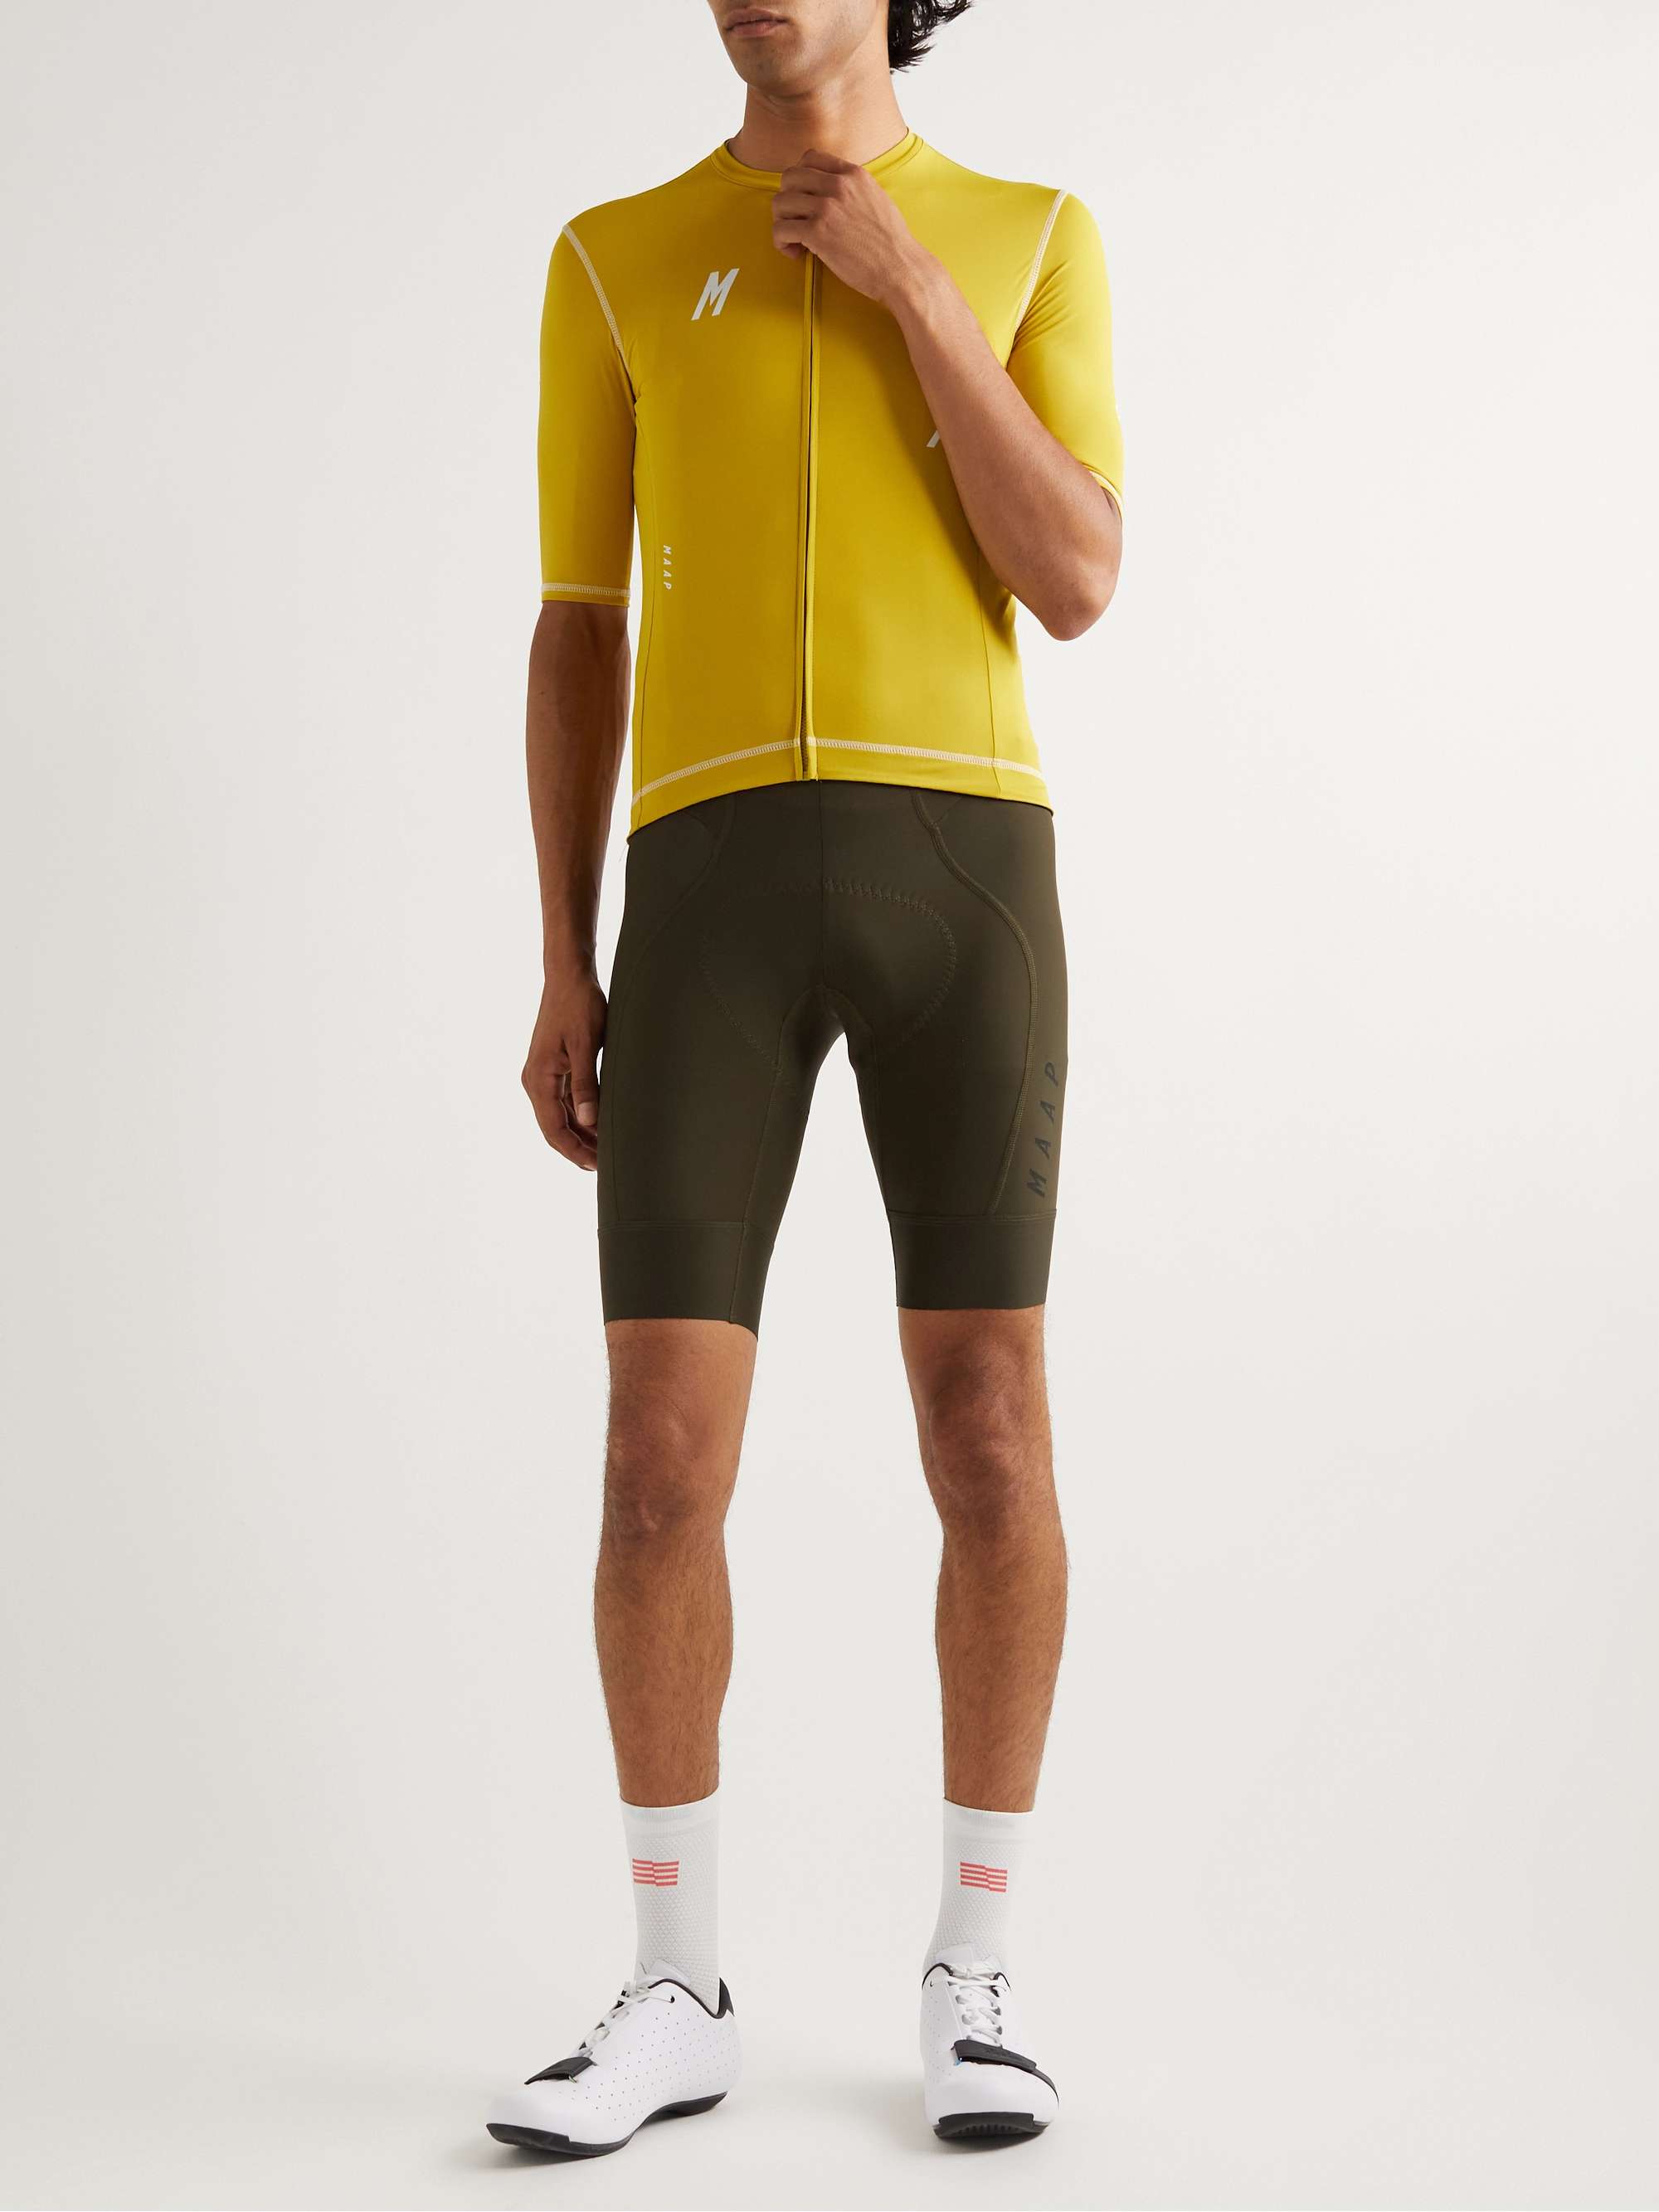 Team Evo Stretch Cycling Bib Shorts | MR PORTER